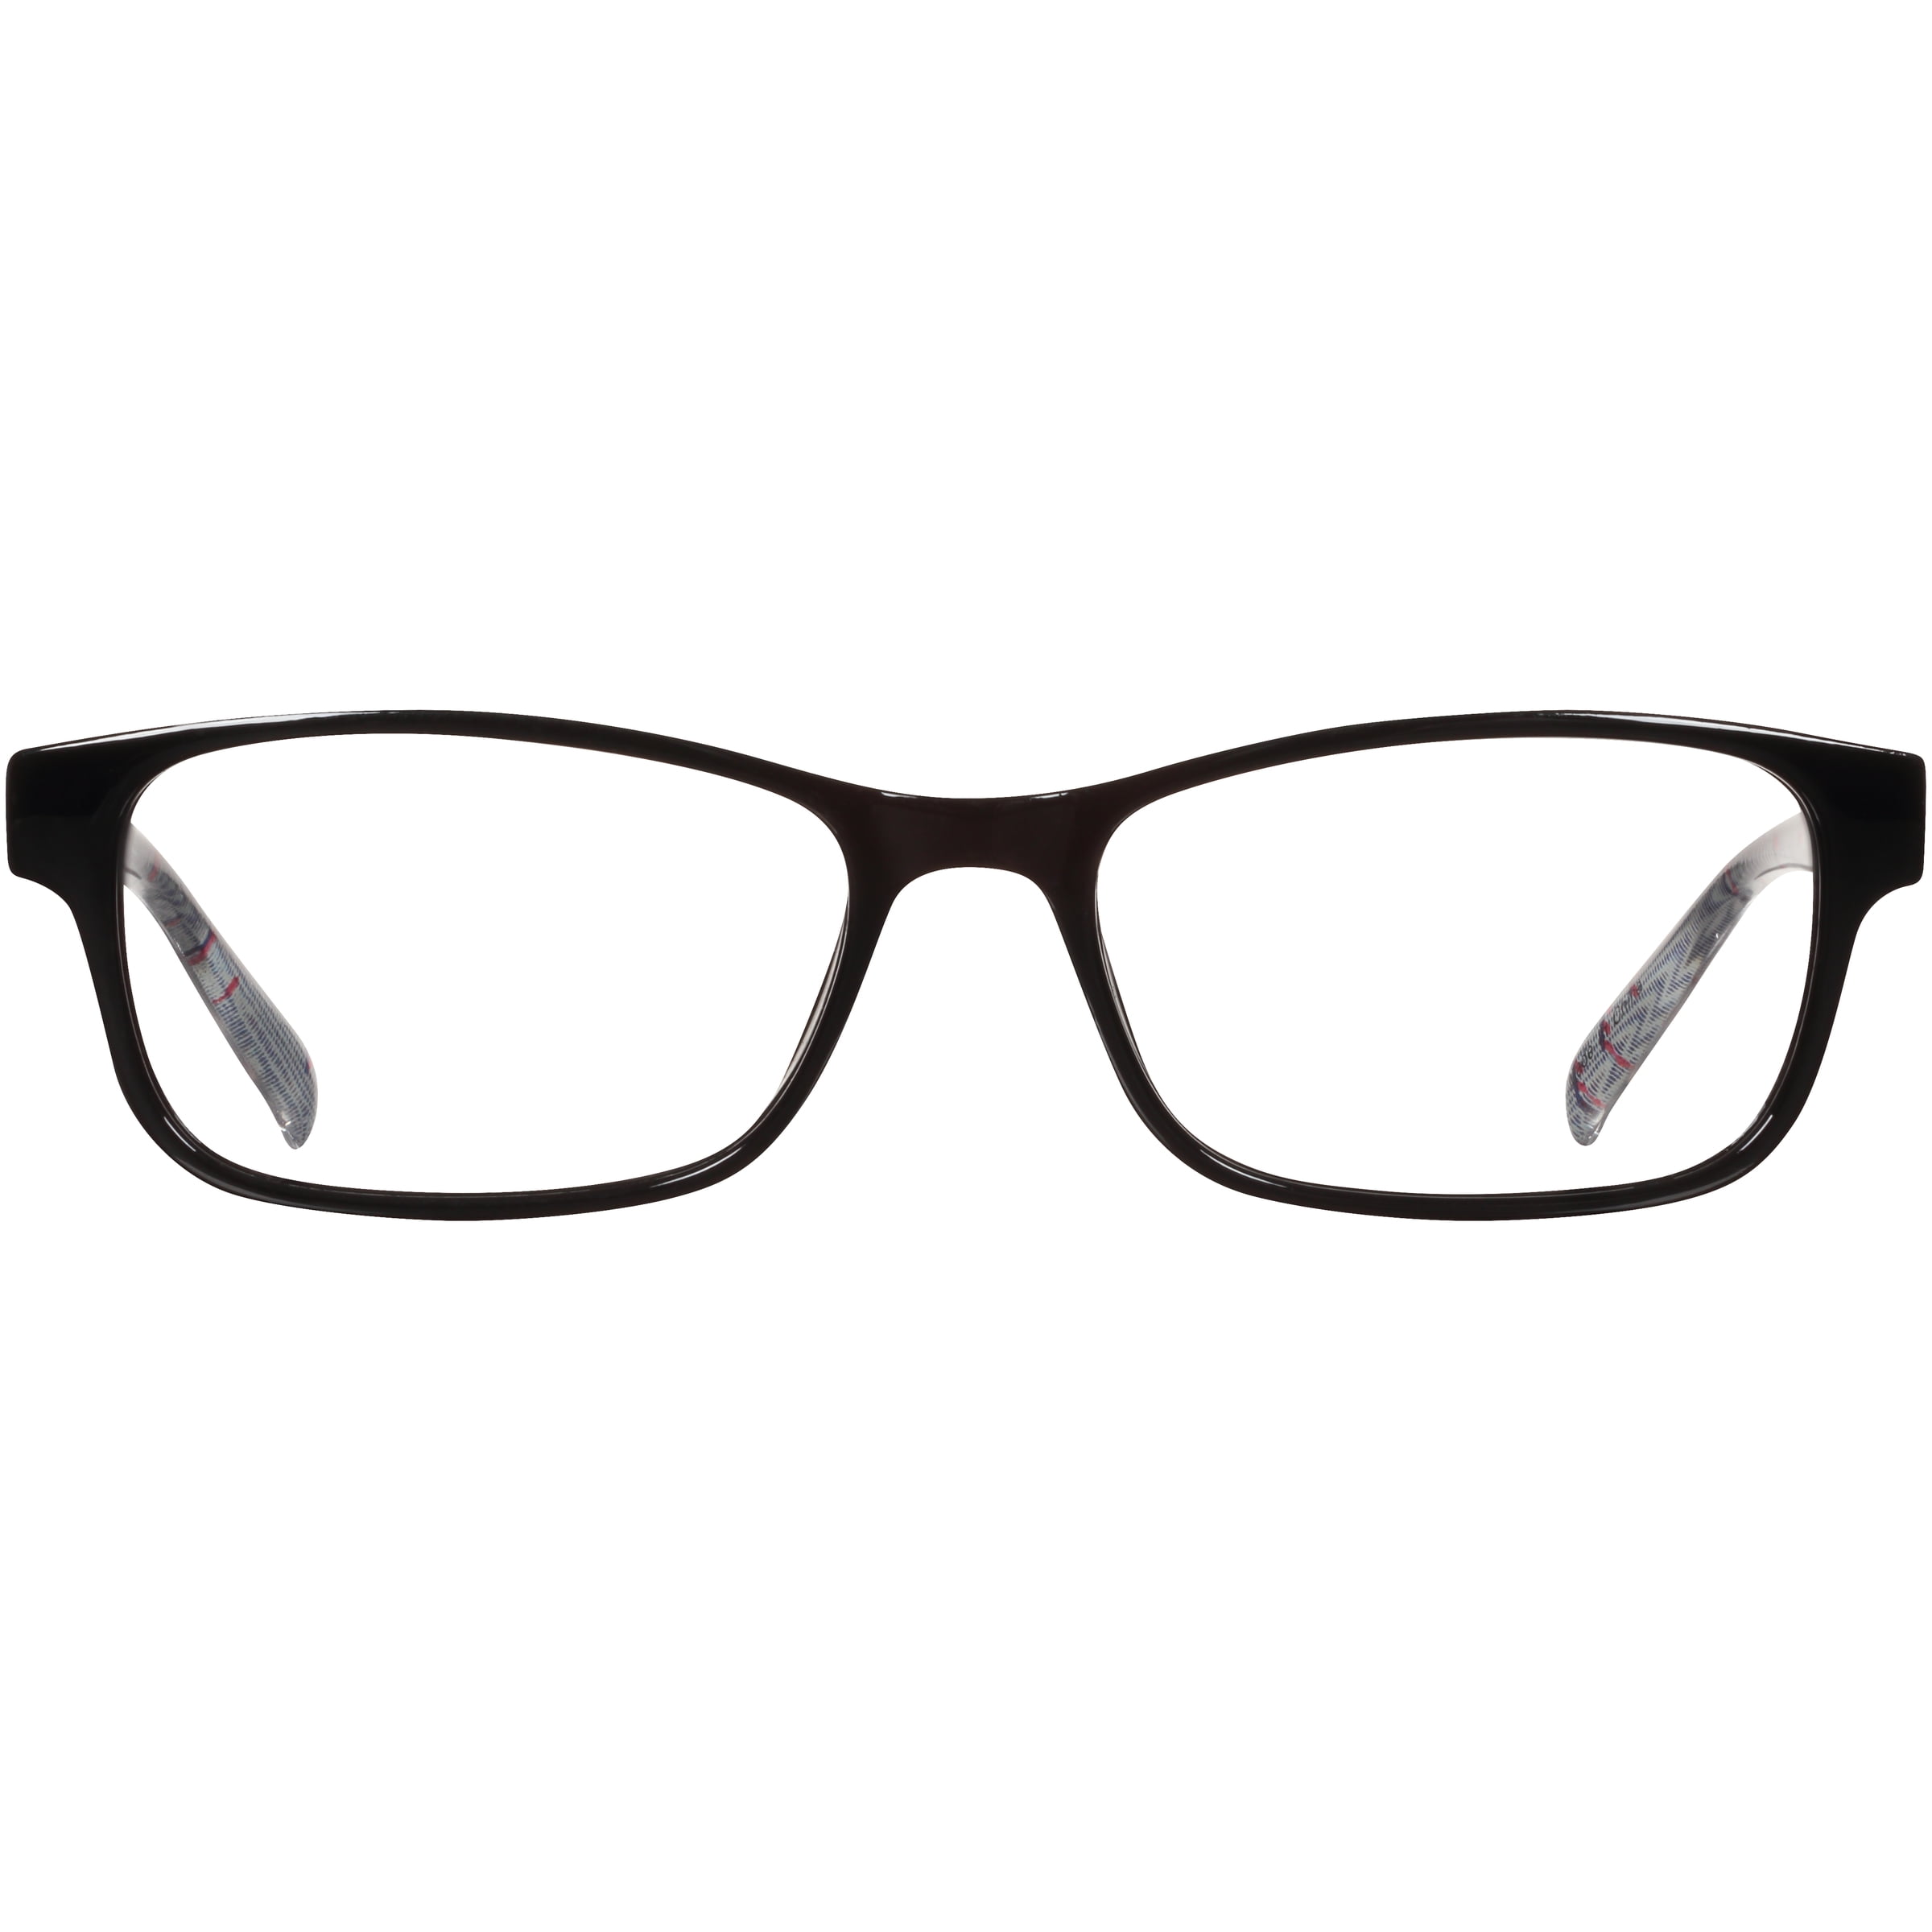 EV1 Skylar Black +1.25 Reading Glasses with Case